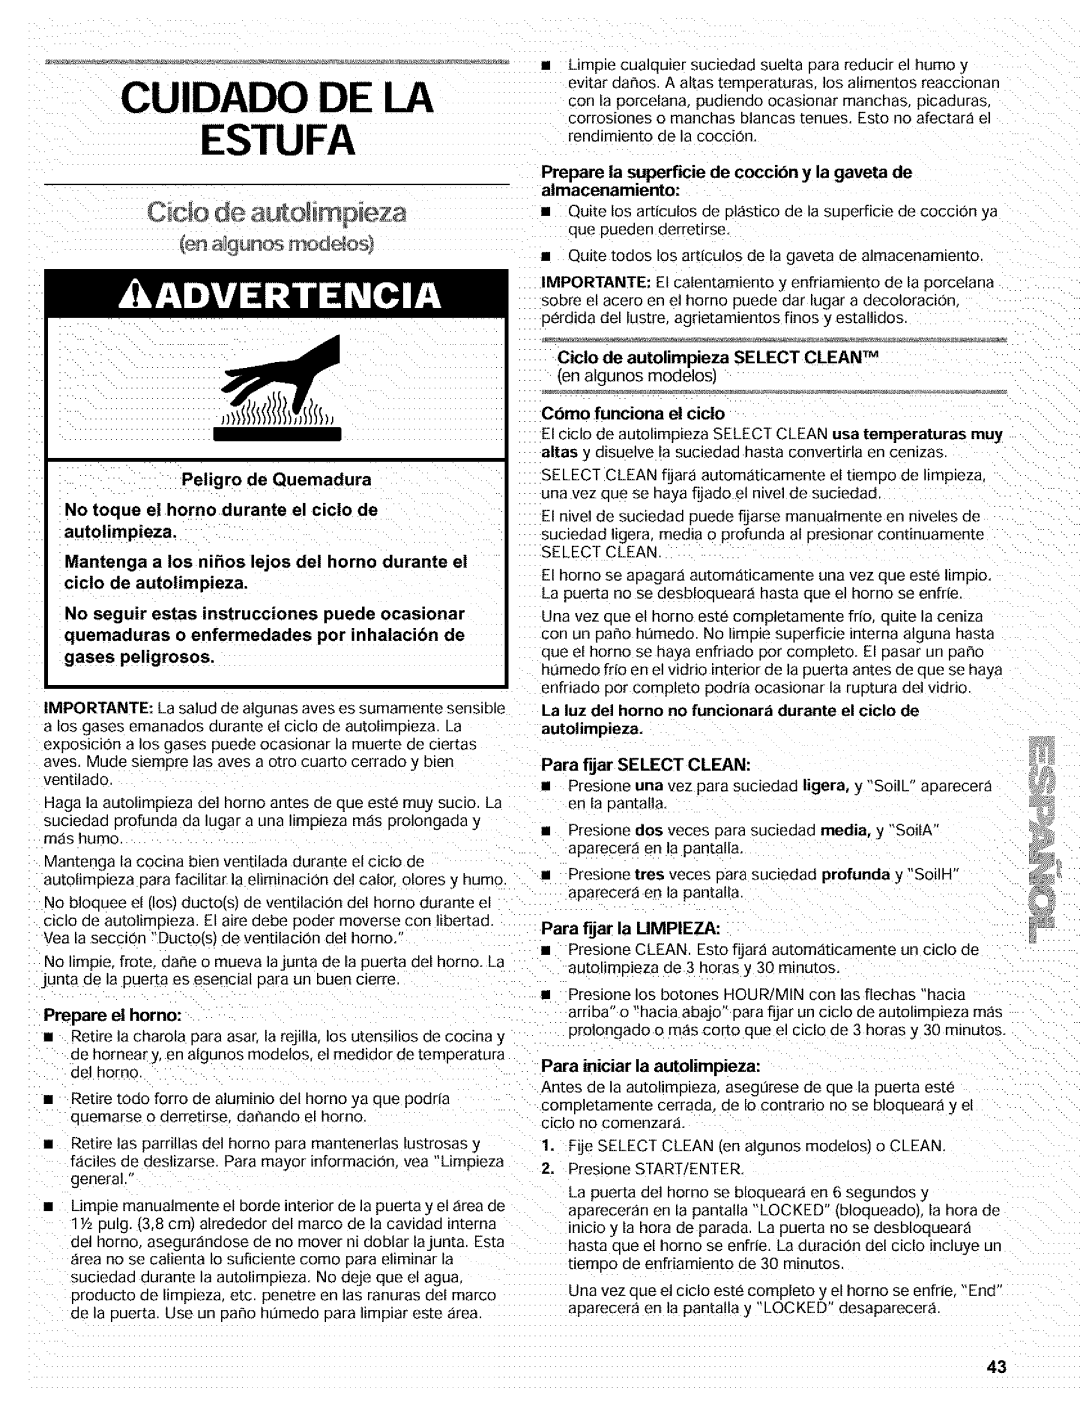 Kenmore 665.72002 manual Cuidado De La Estufa, de auto m, eza, Peligro de Quemadura 